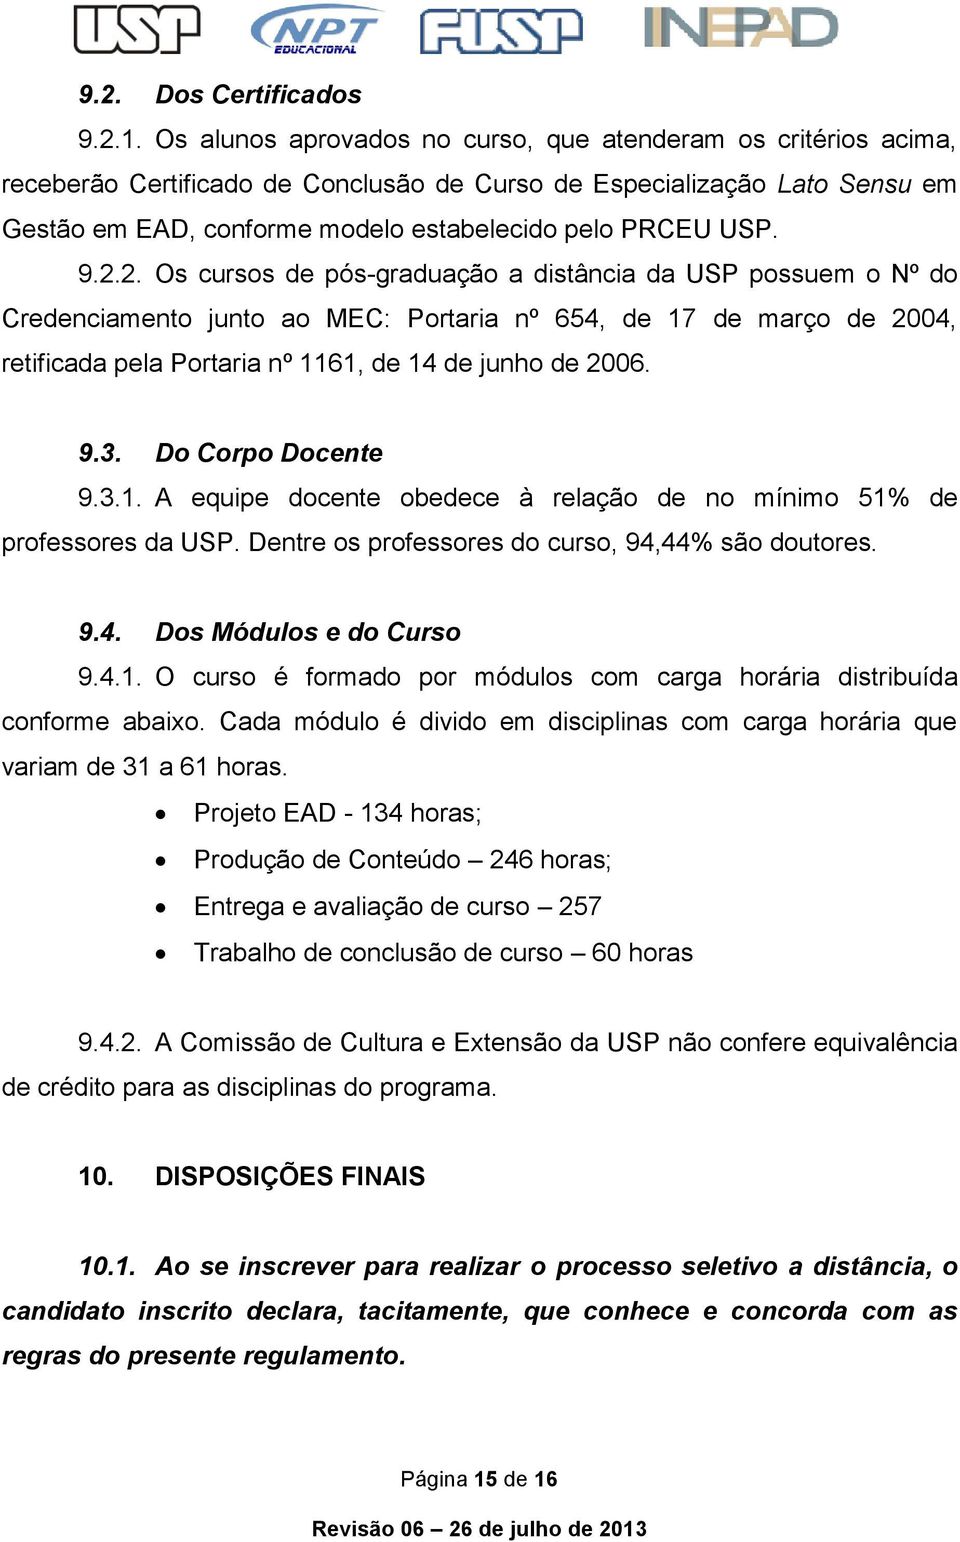 9.2.2. Os cursos de pós-graduação a distância da USP possuem o Nº do Credenciamento junto ao MEC: Portaria nº 654, de 17 de março de 2004, retificada pela Portaria nº 1161, de 14 de junho de 2006. 9.